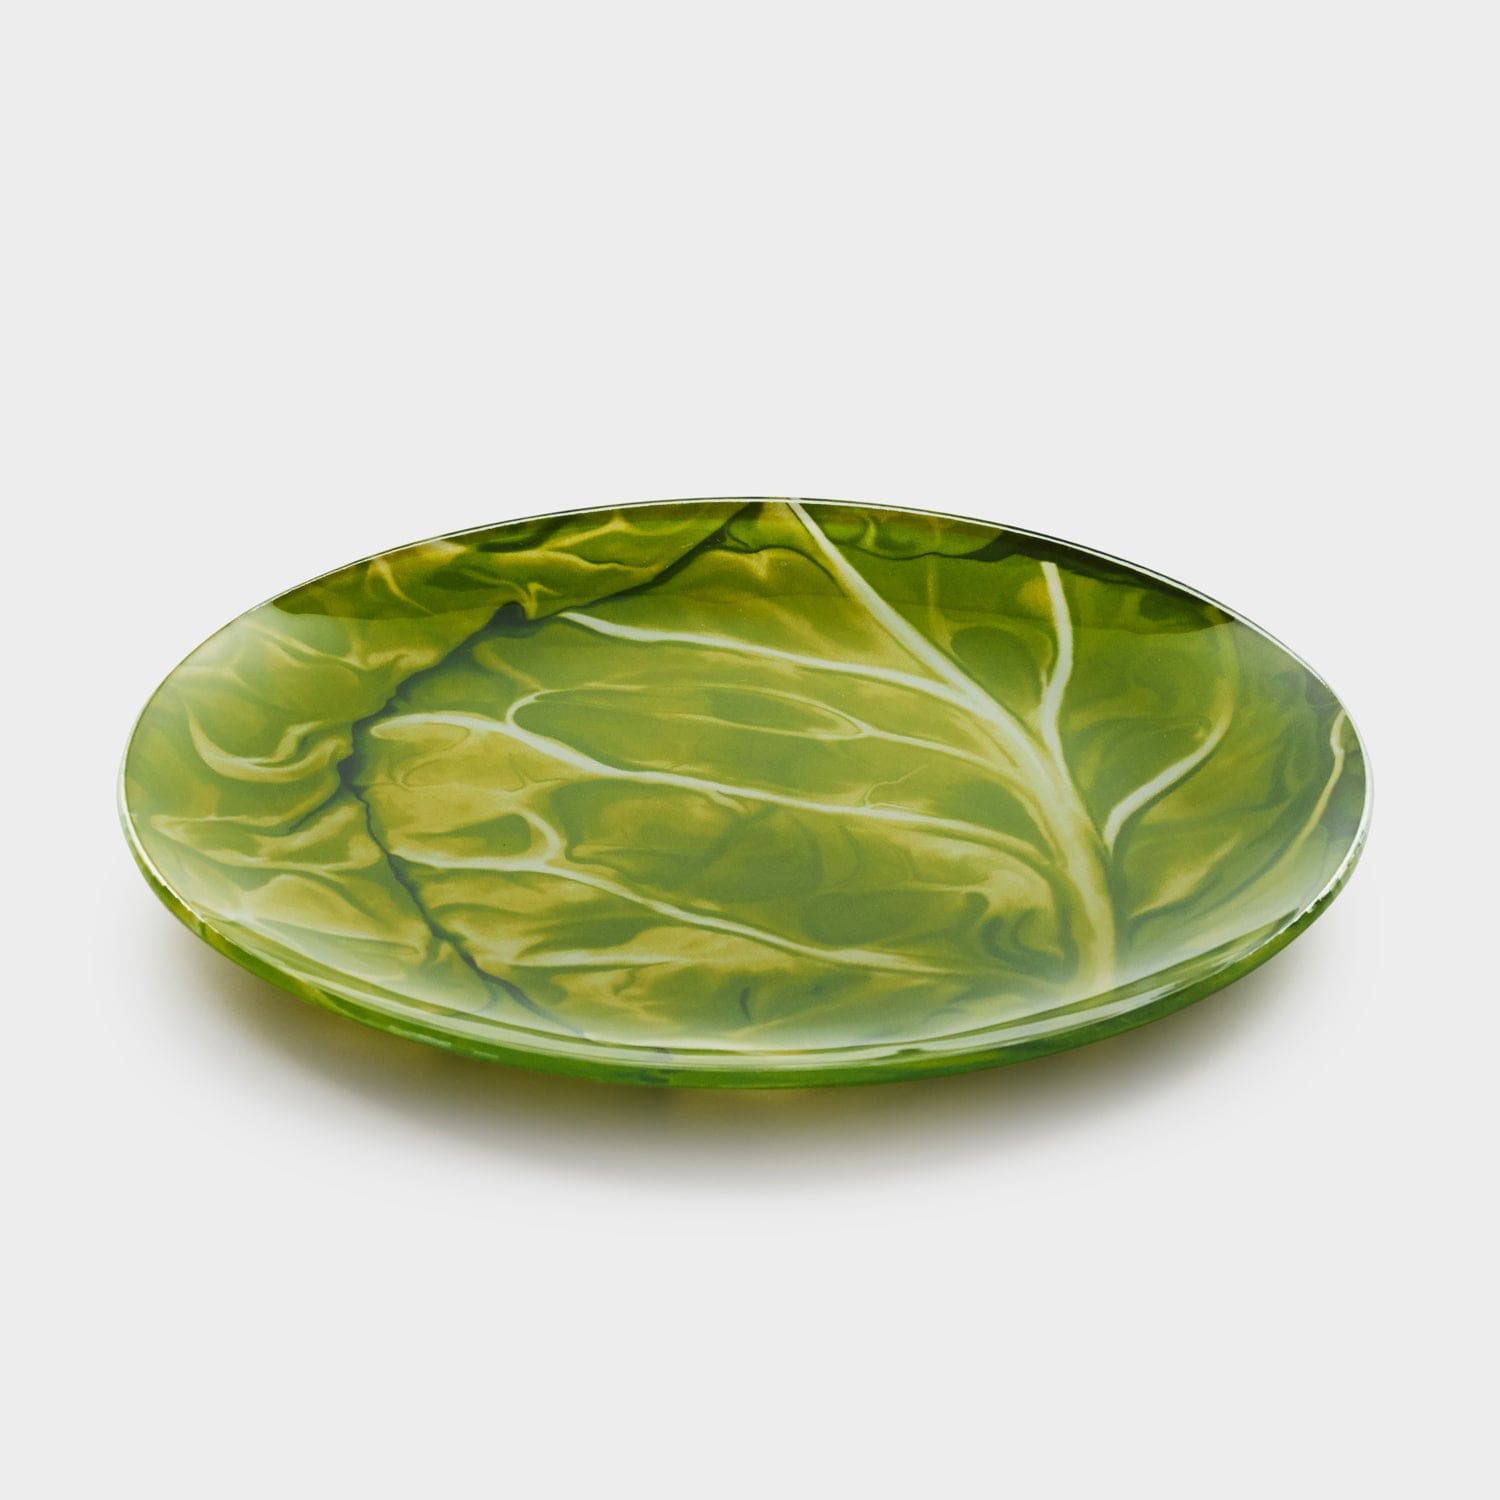 Red Butler Half Plates Designer Glass Snack Plate - Cabbage | 6pcs set DDP20A5 Redbutler